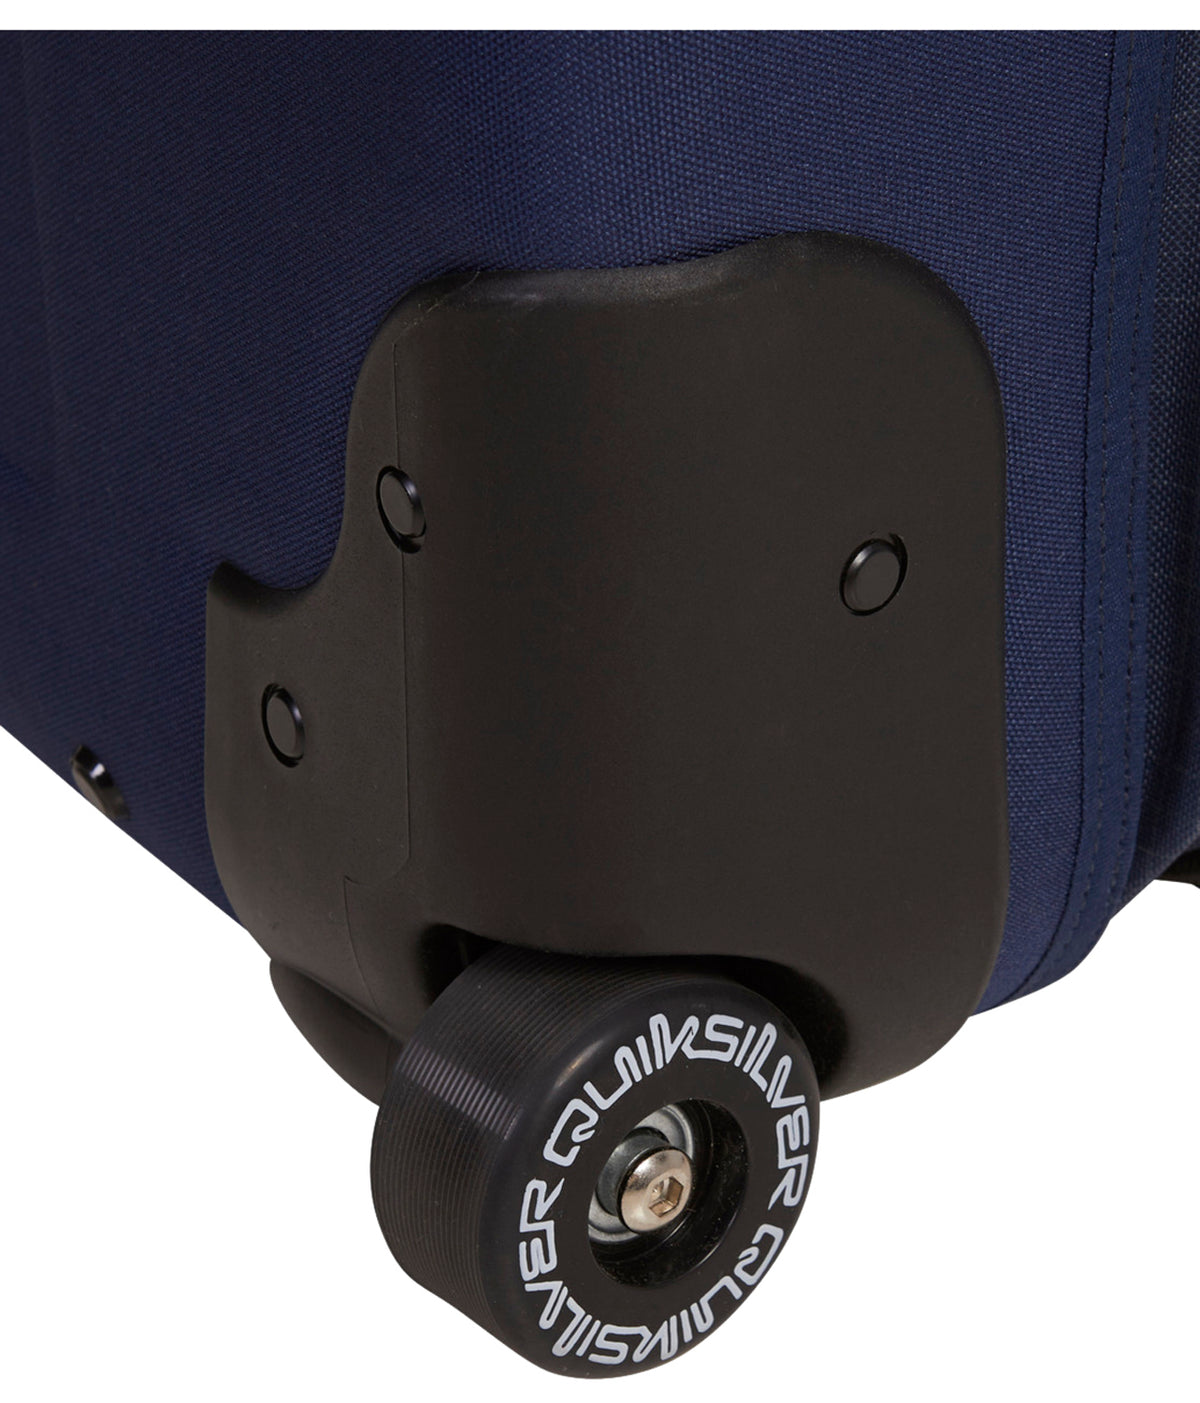 Quiksilver Horizon 41L Suitcase - Naval Academy